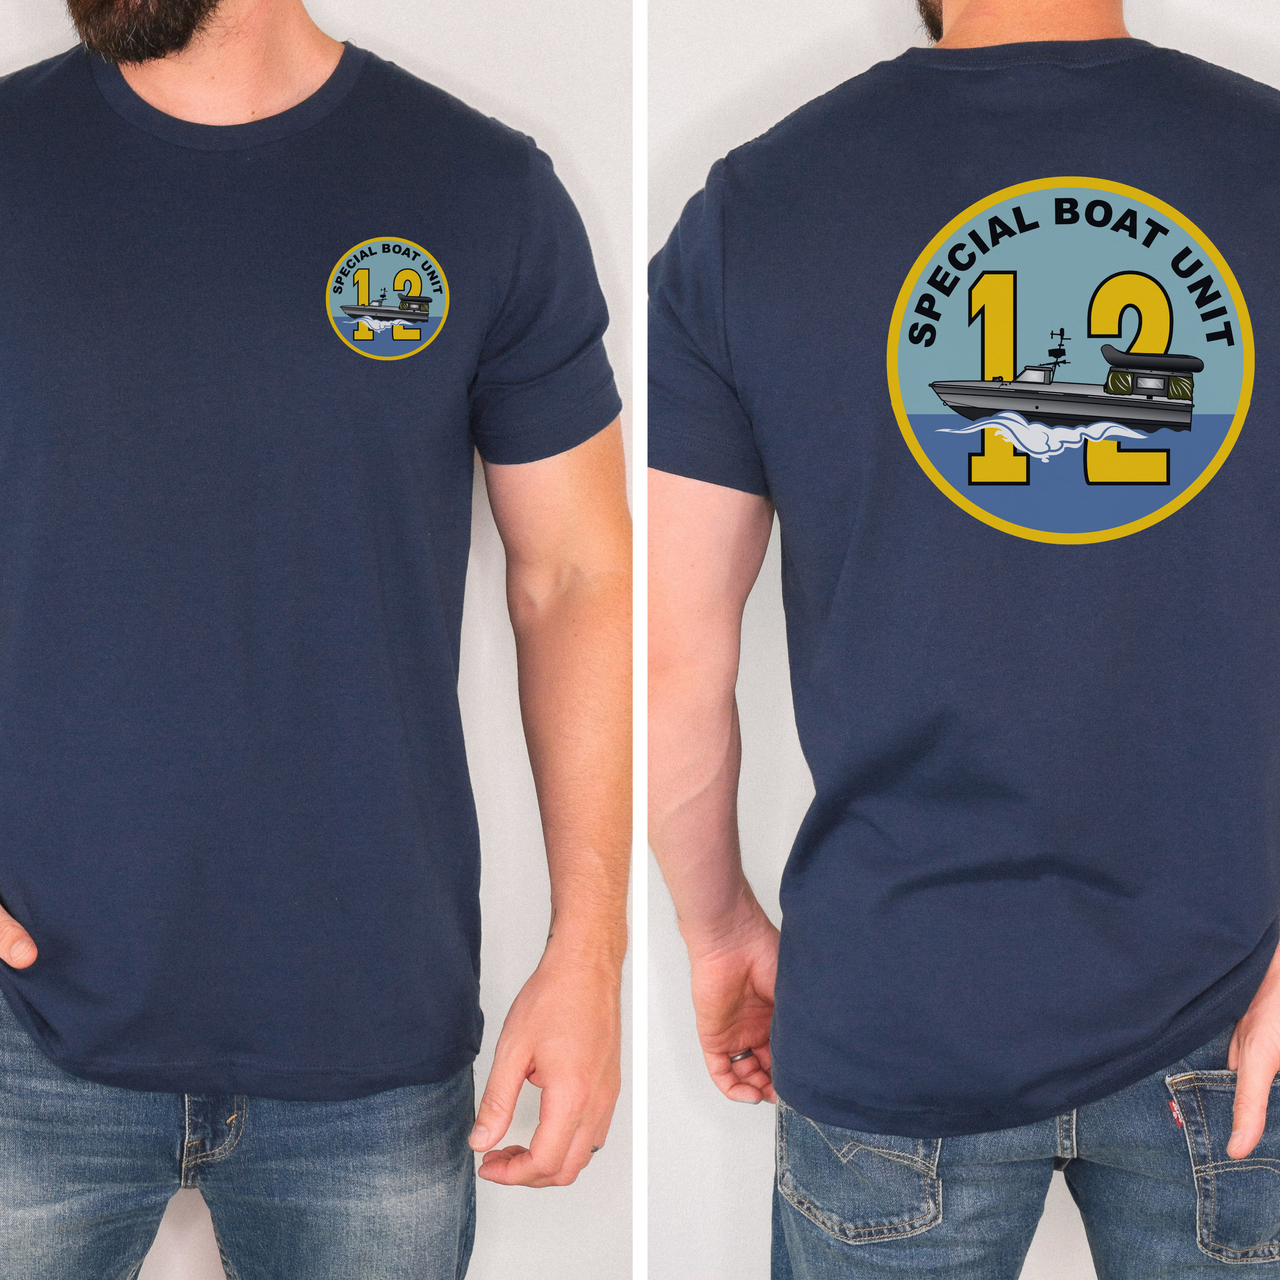 Special Boat Unit 12 v3 - SBU 12 T-Shirt (Color)